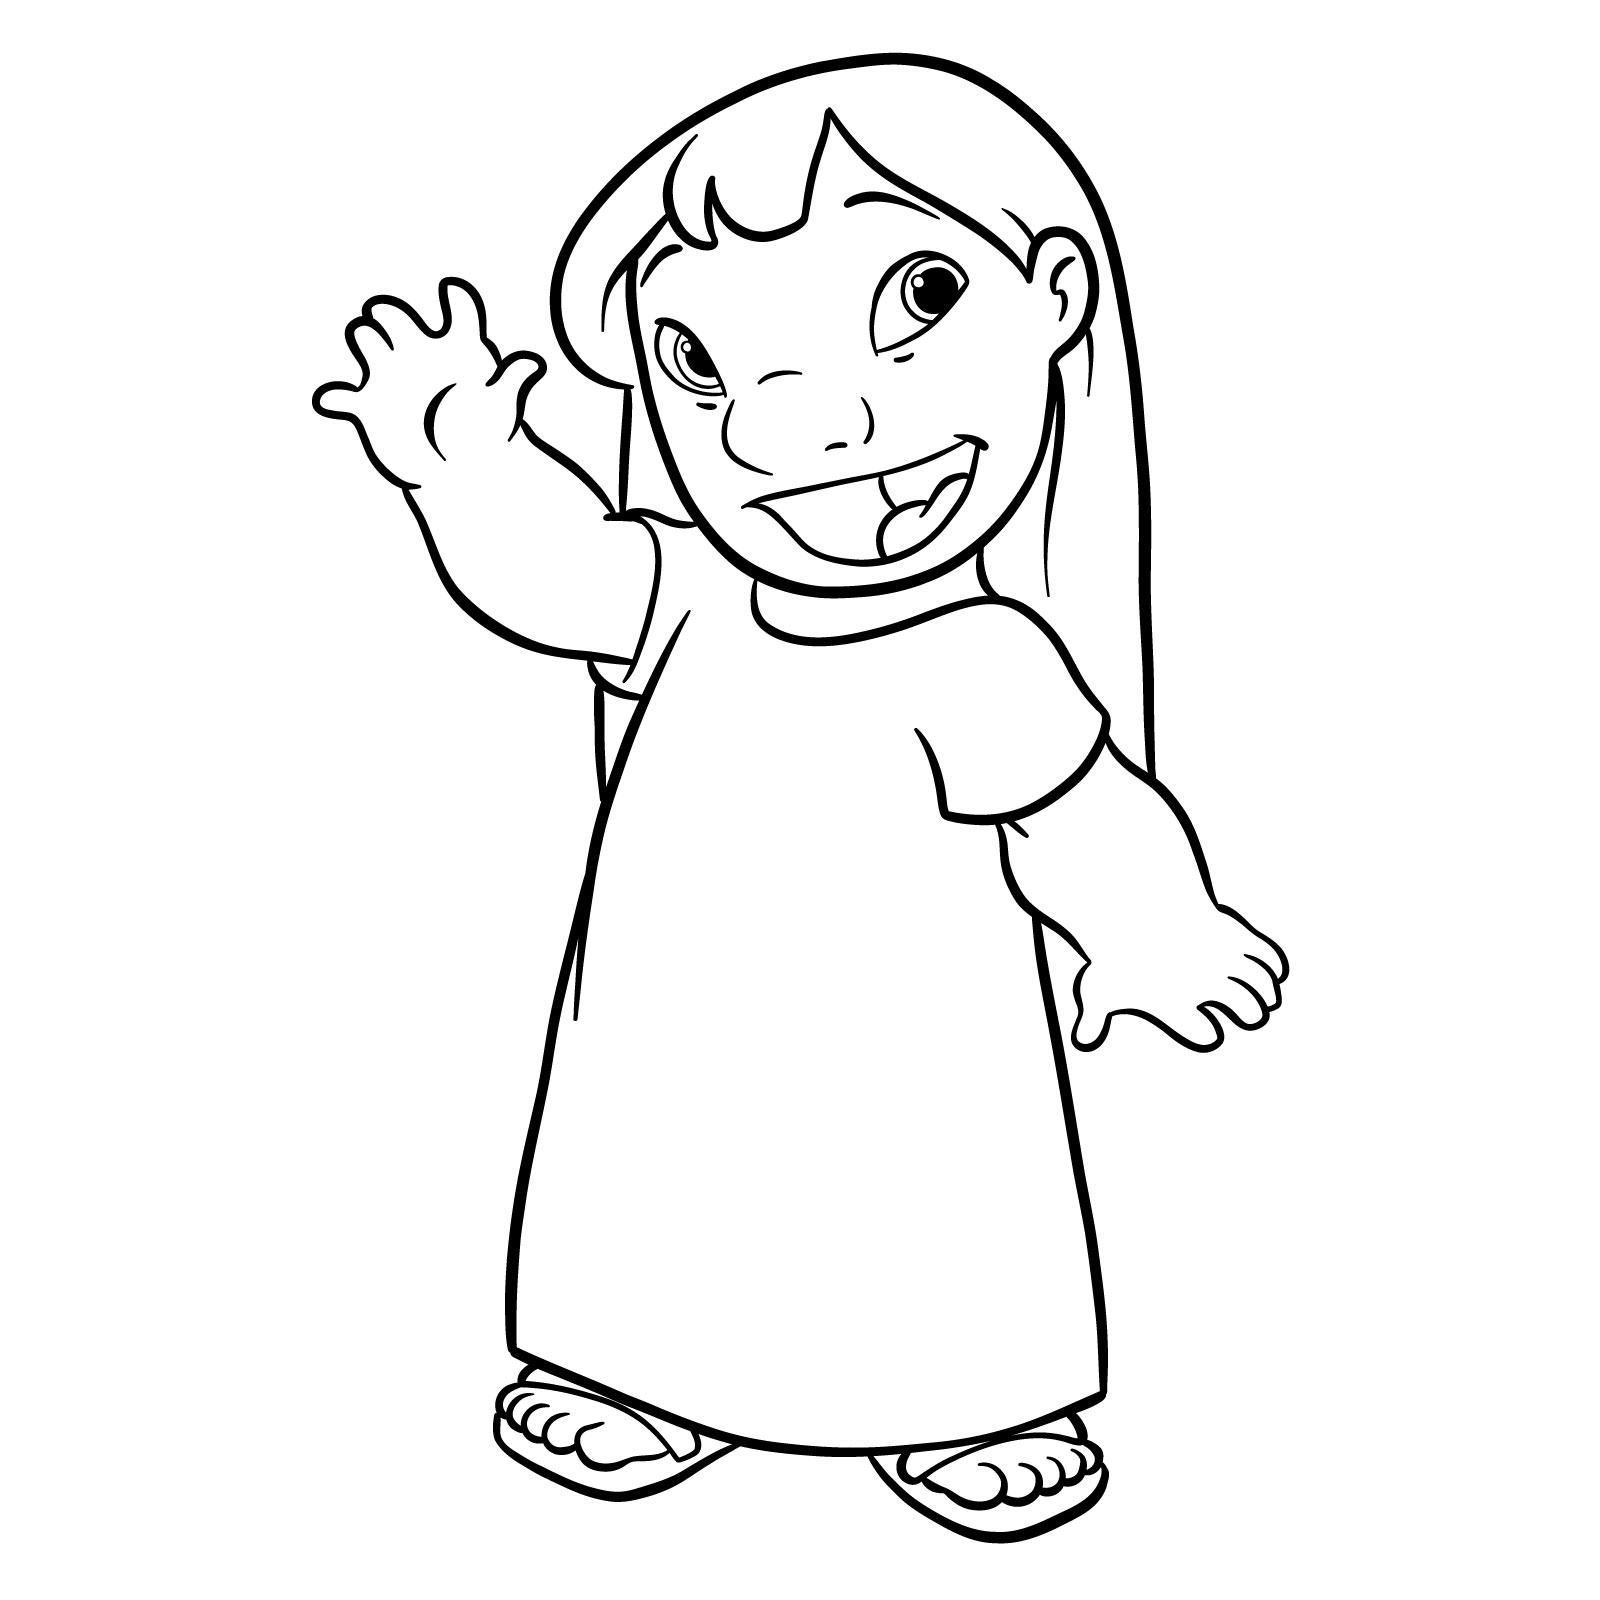 How to draw Lilo from Lilo & Stitch - final step